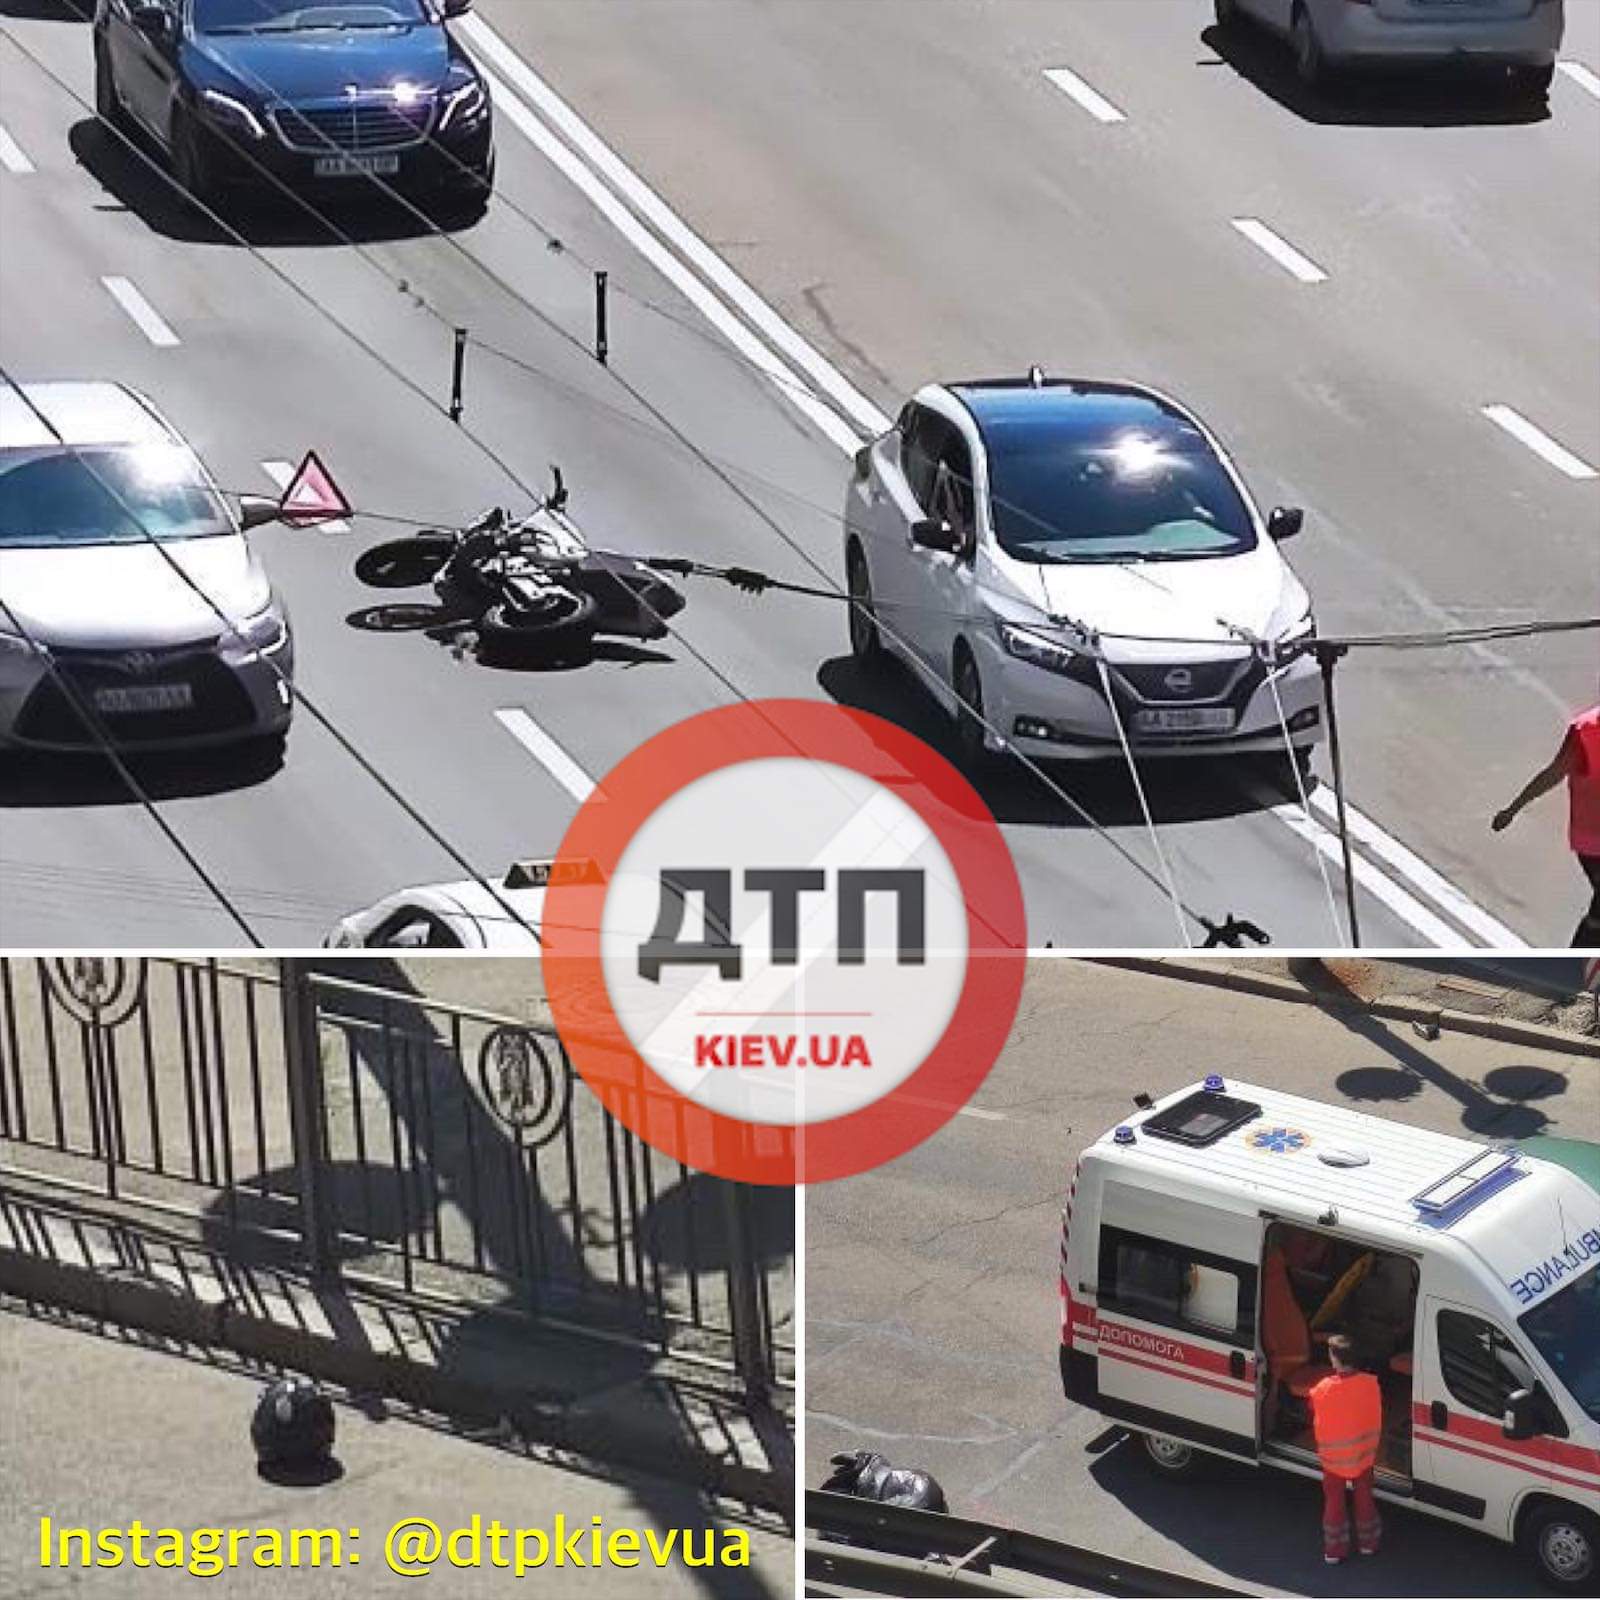 В Киеве на Голосеевском проспекте произошло смертельное мото ДТП - автомобиль сбил мотоцикл: пилот отлетел на 30 метров